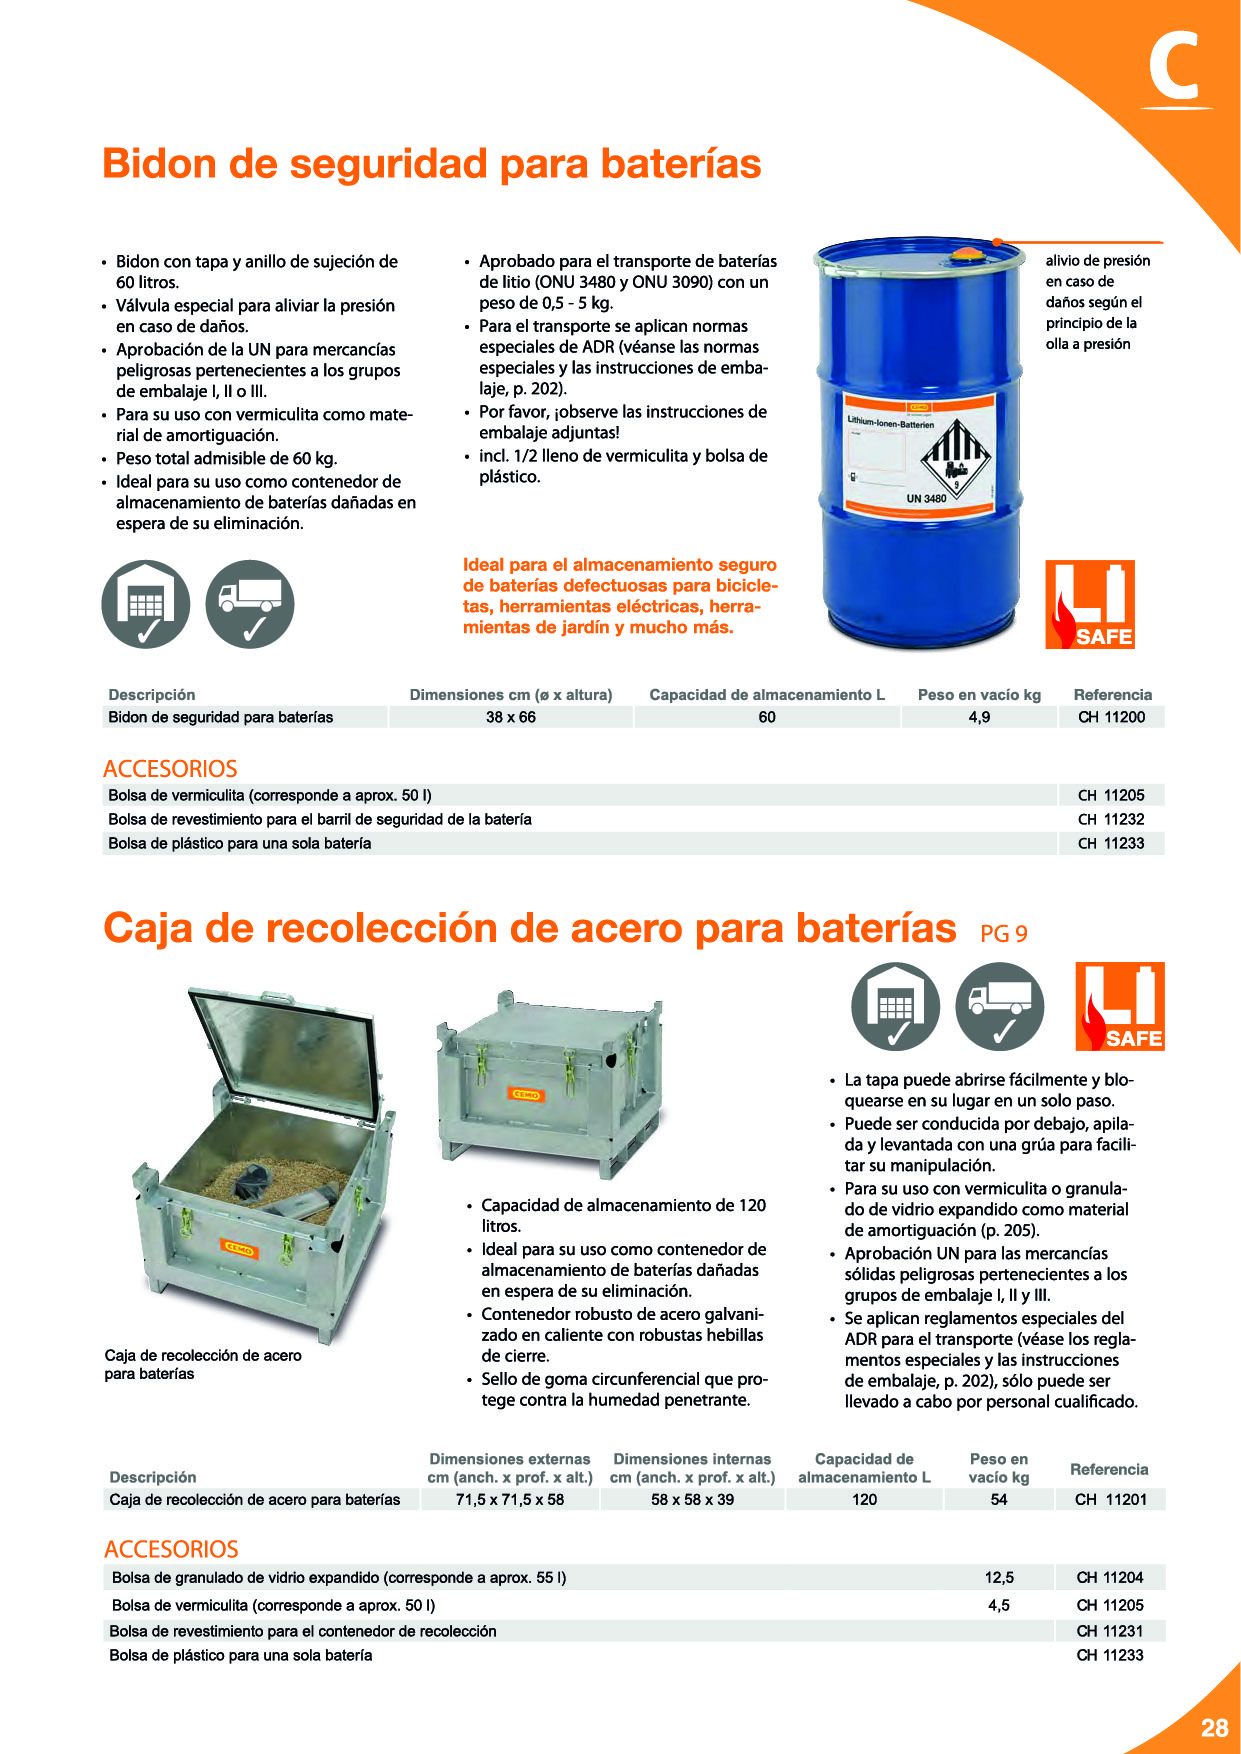 Baterías de litio: Seguridad para el almacenamiento, carga y transporte29